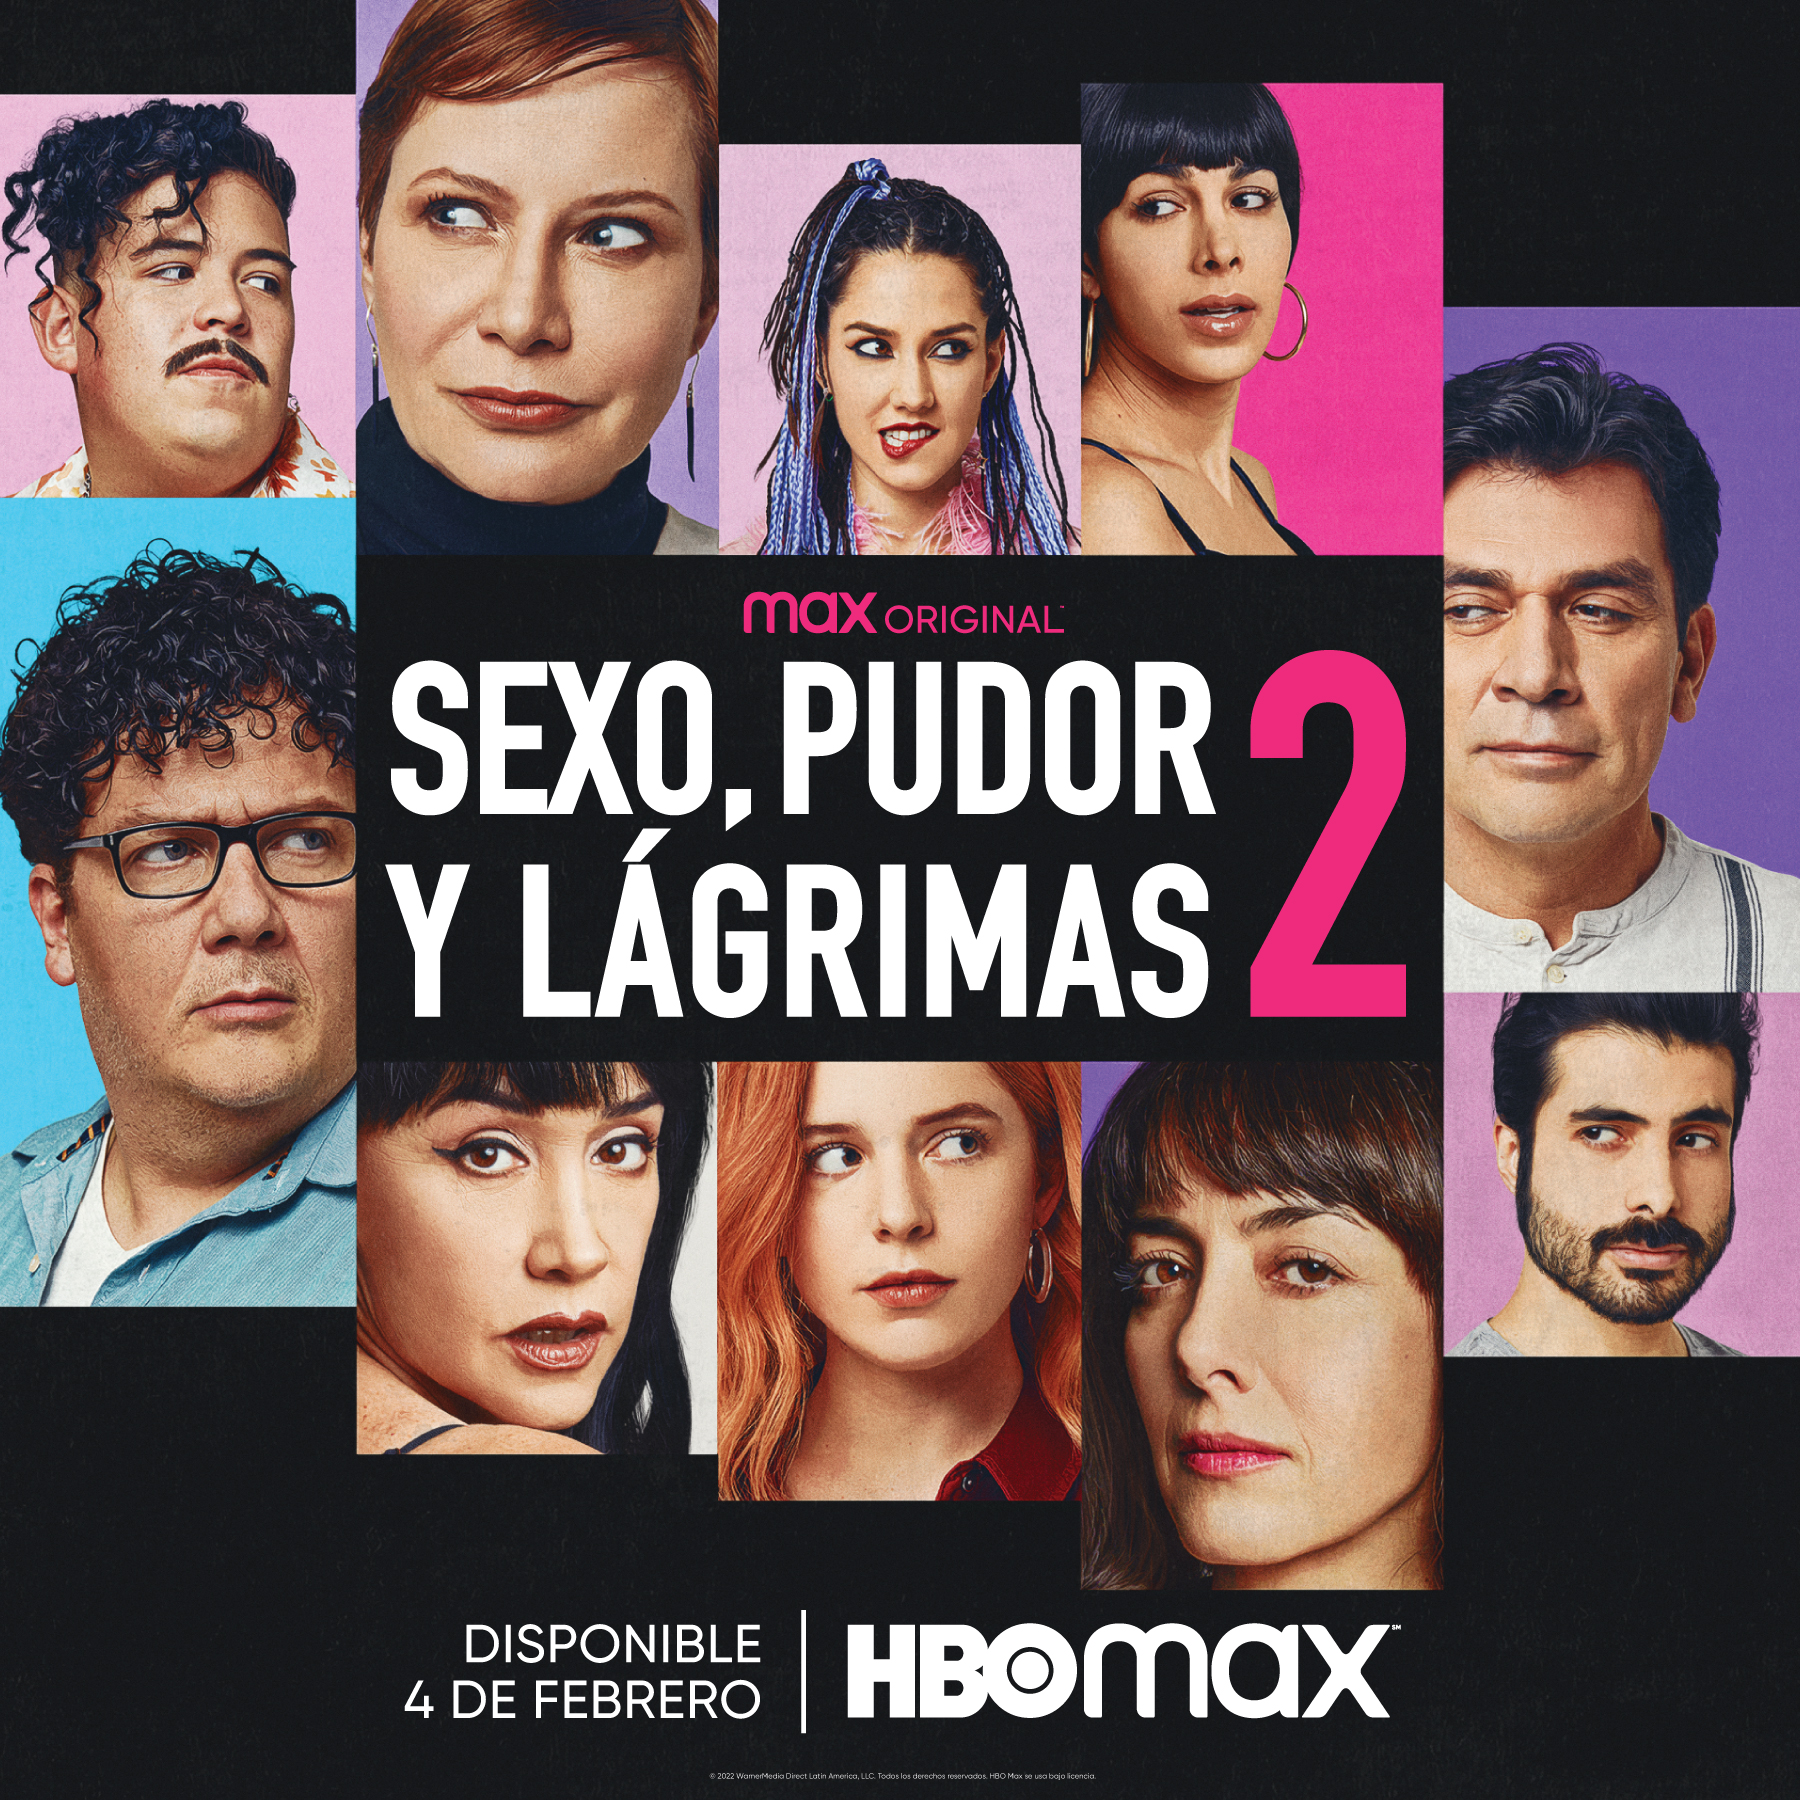 “Sexo, Pudor y Lágrimas 2” se salta las salas de cine y llega a HBO MAX